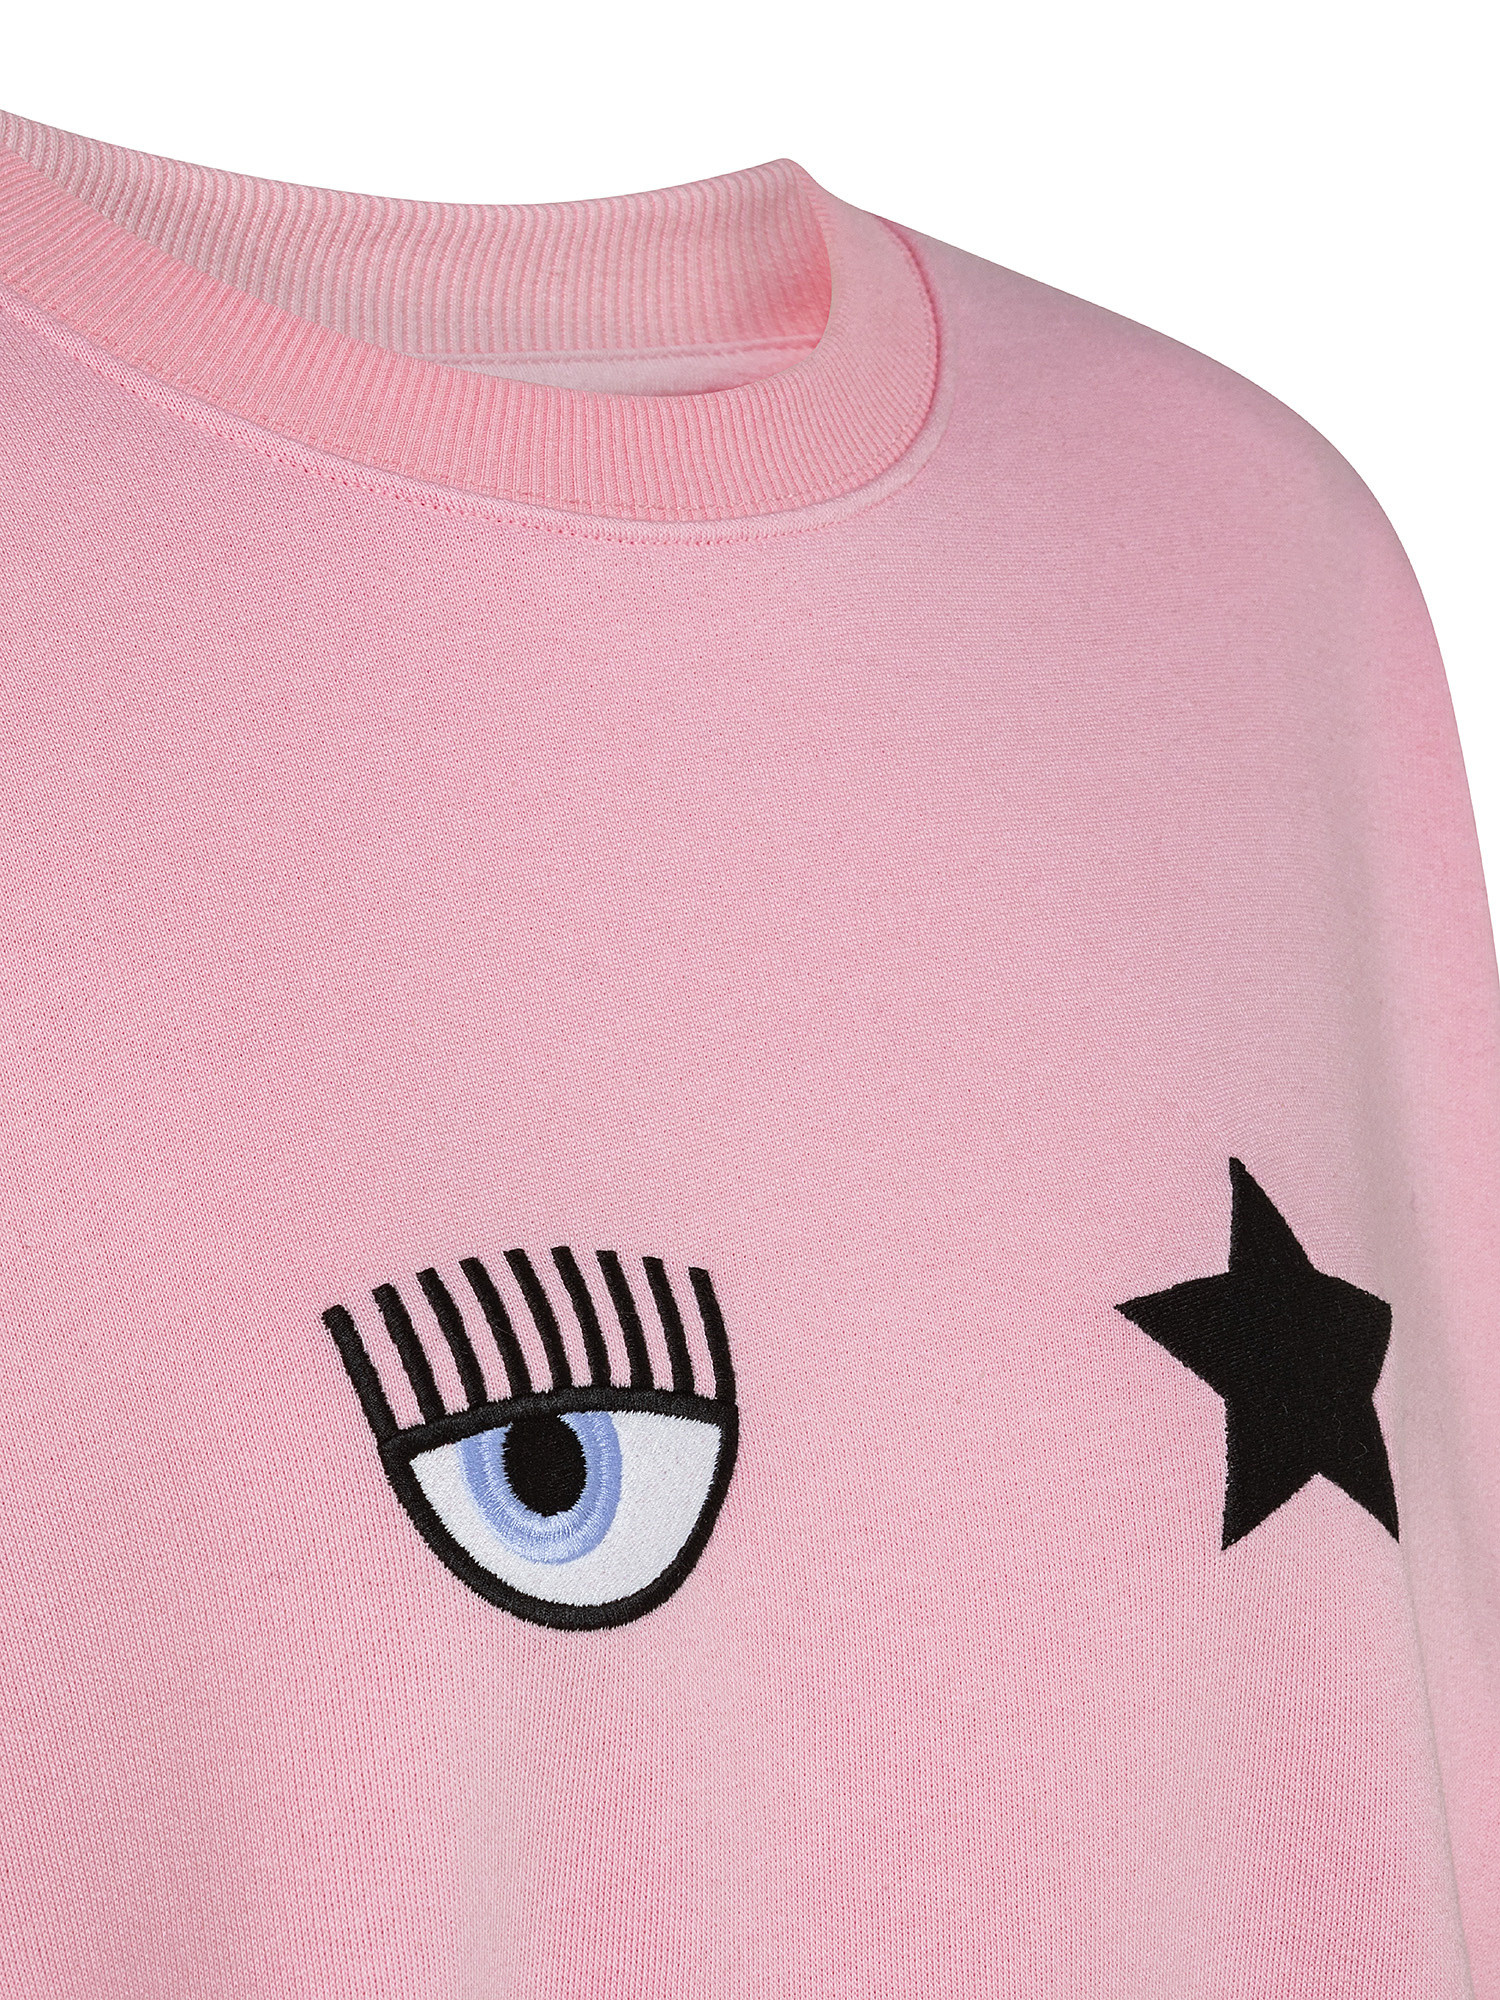 Eye Star sweatshirt, Pink, large image number 2